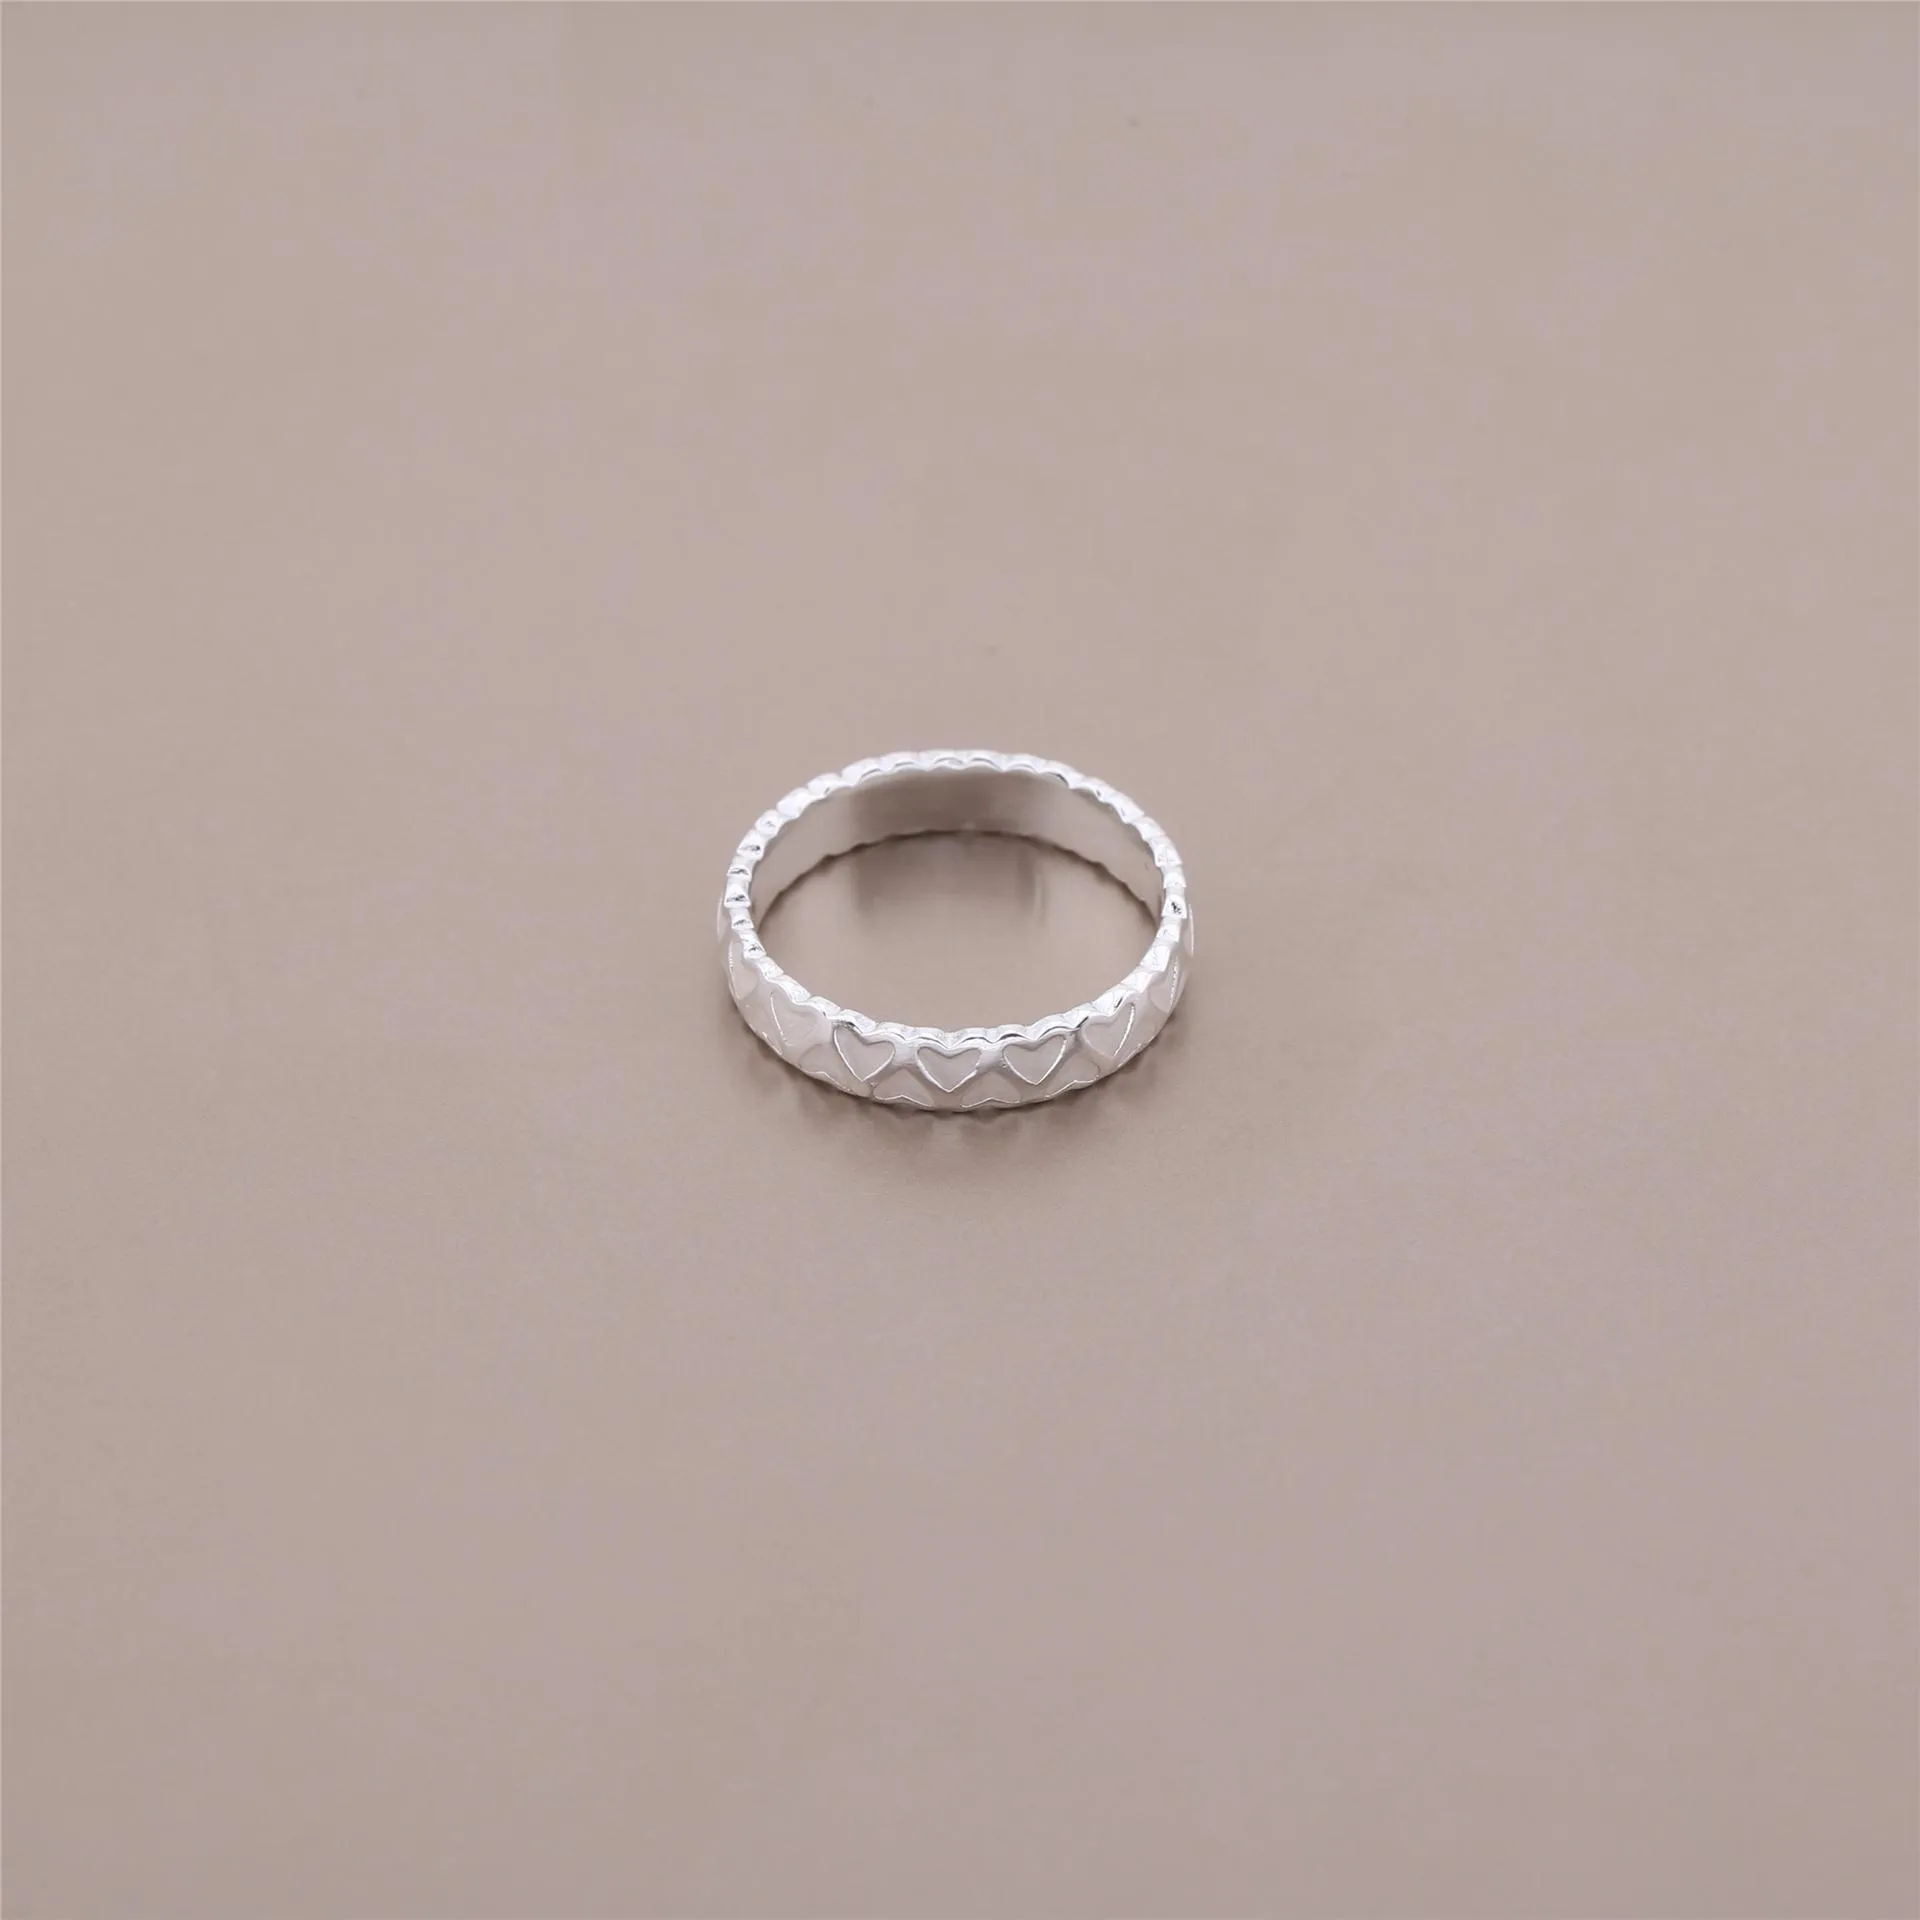 Heart silver ring with silver enamel - 190975EN23 - Inele PANDOR